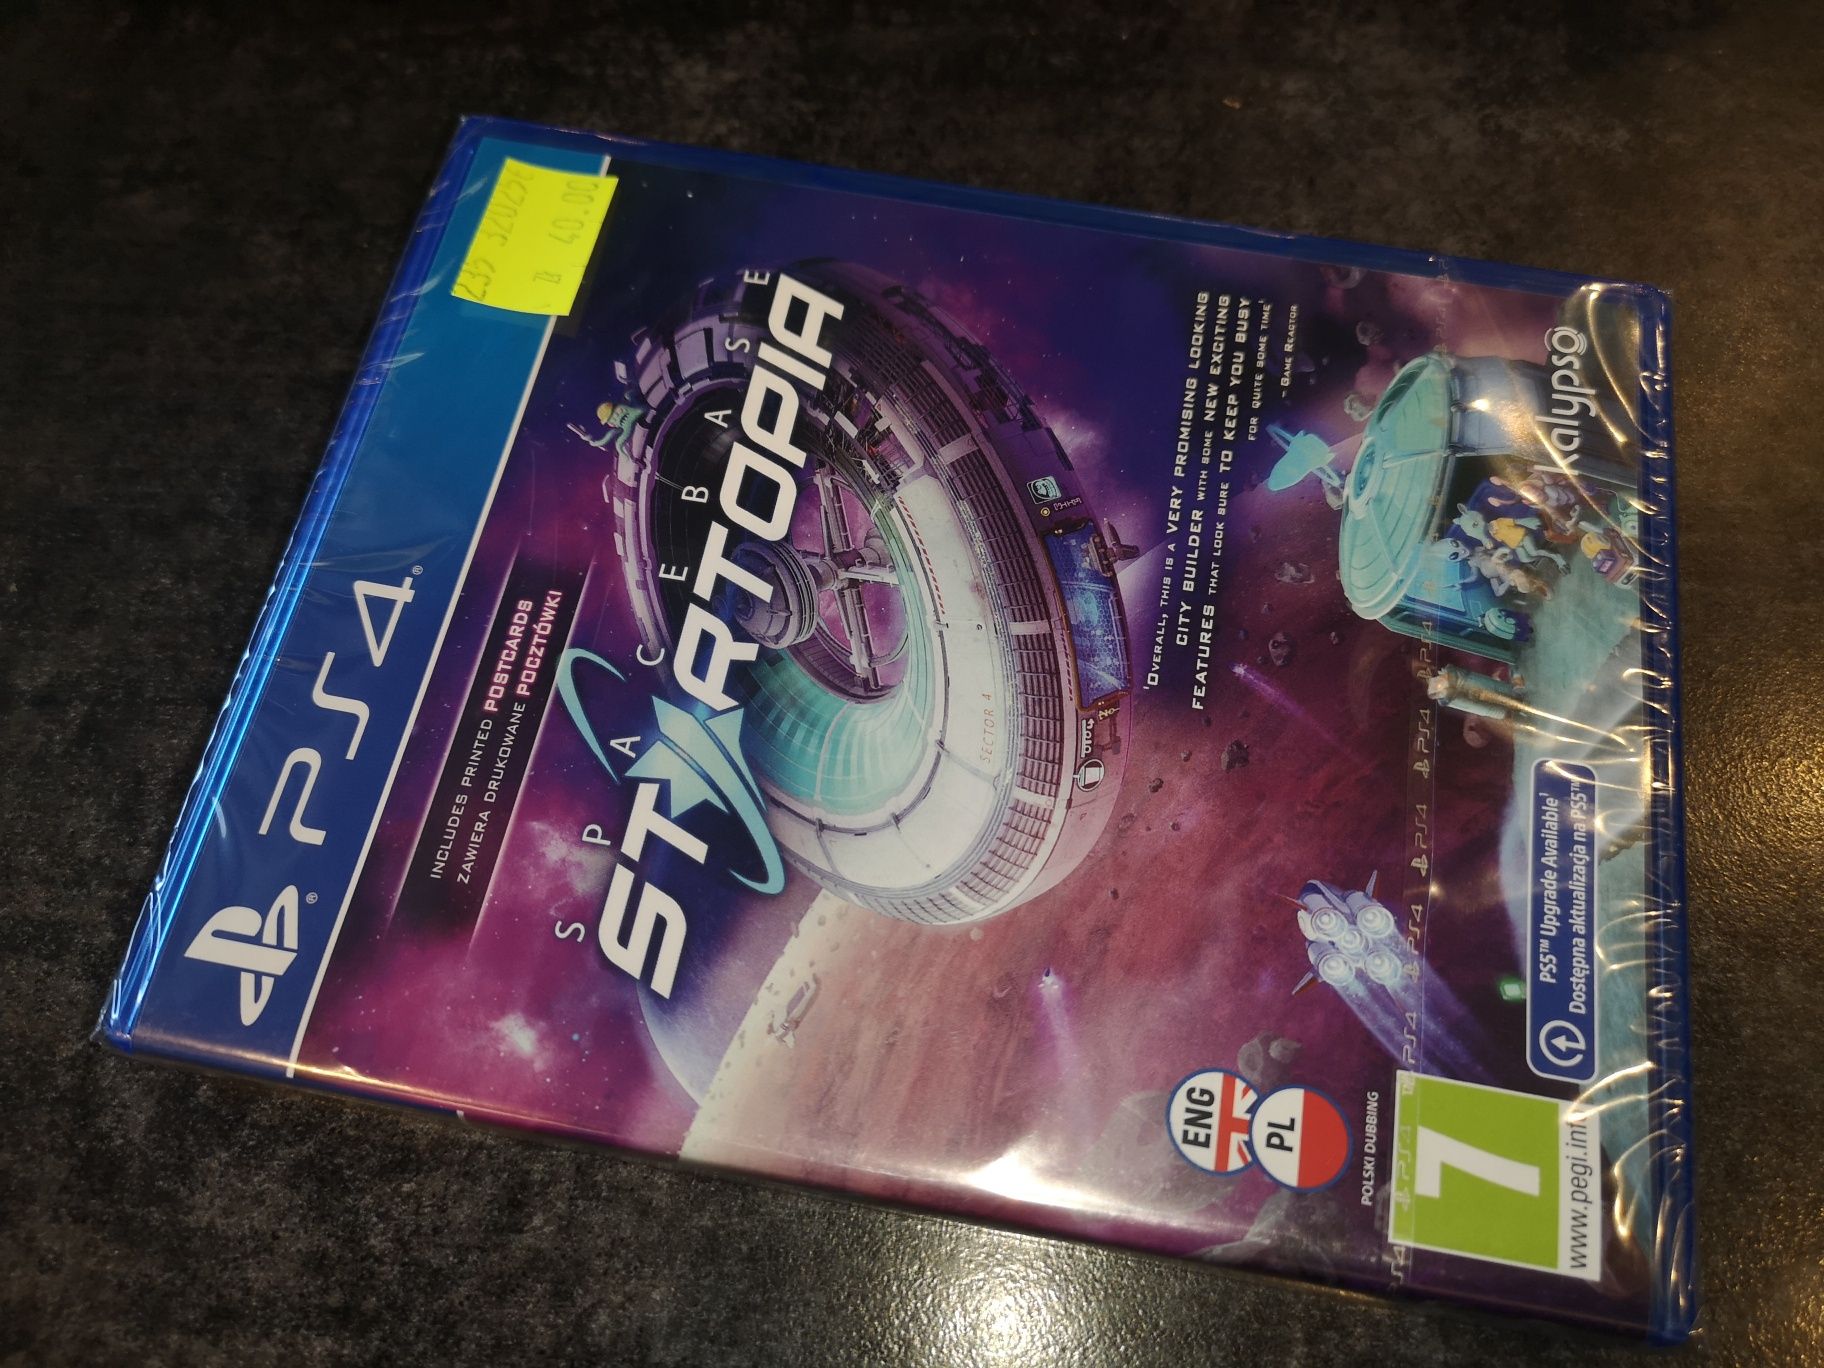 SpaceBase Startopia PS4 gra PL (strategia ekonomiczna) (Nowa) sklep